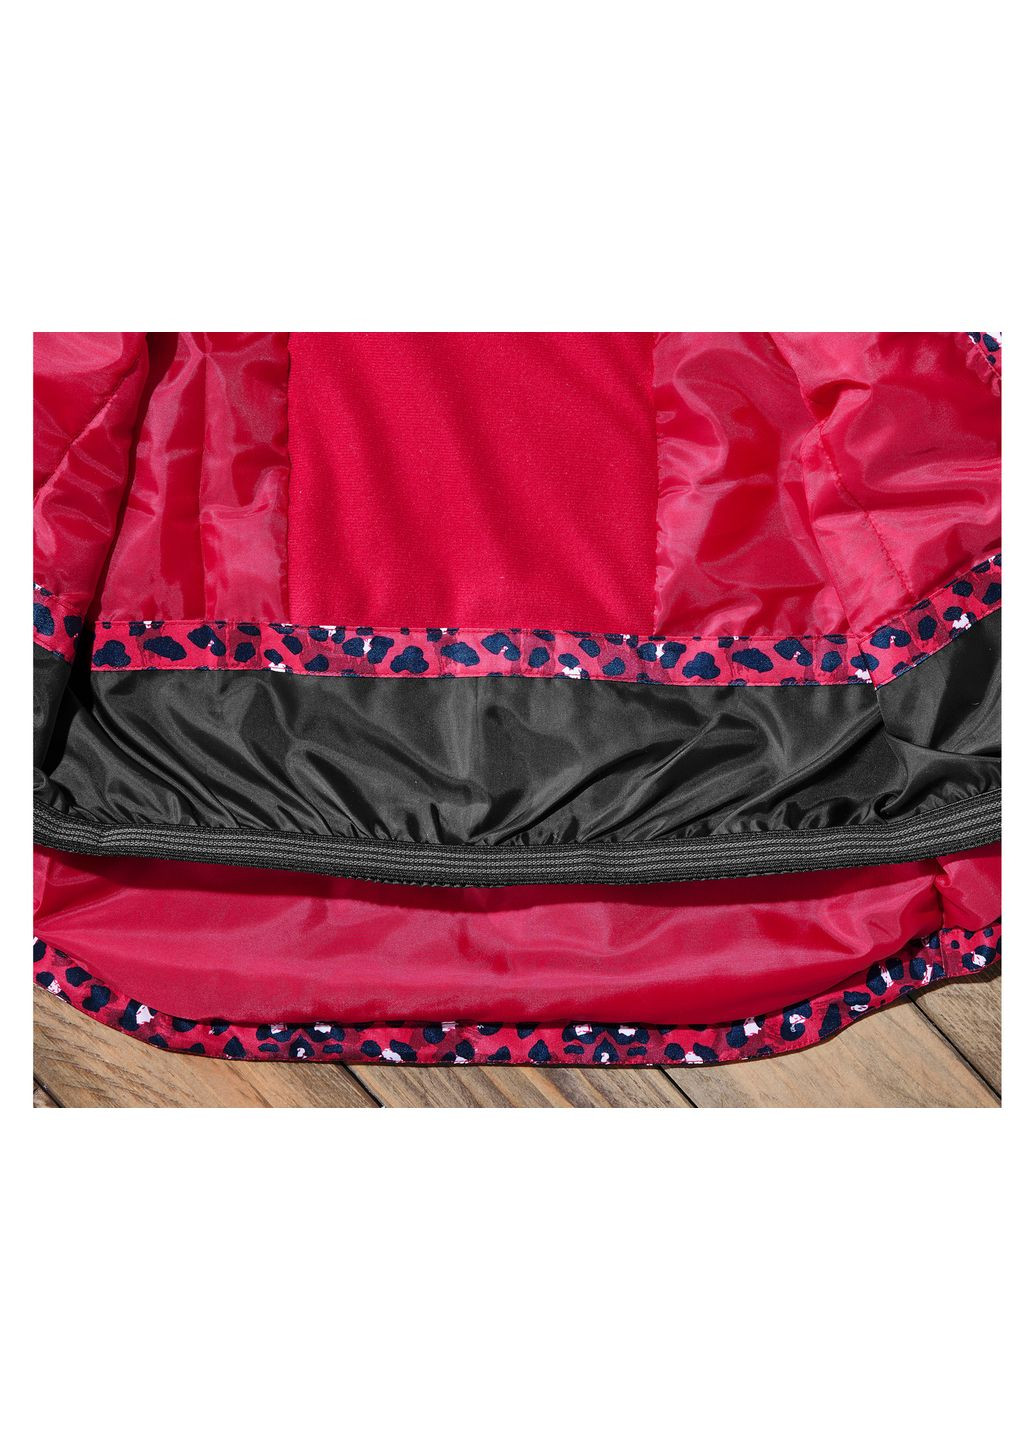 Малиновая демисезонная термо-куртка мембранная (3000мм) для девочки thermolite® ecomade 427318 Lupilu